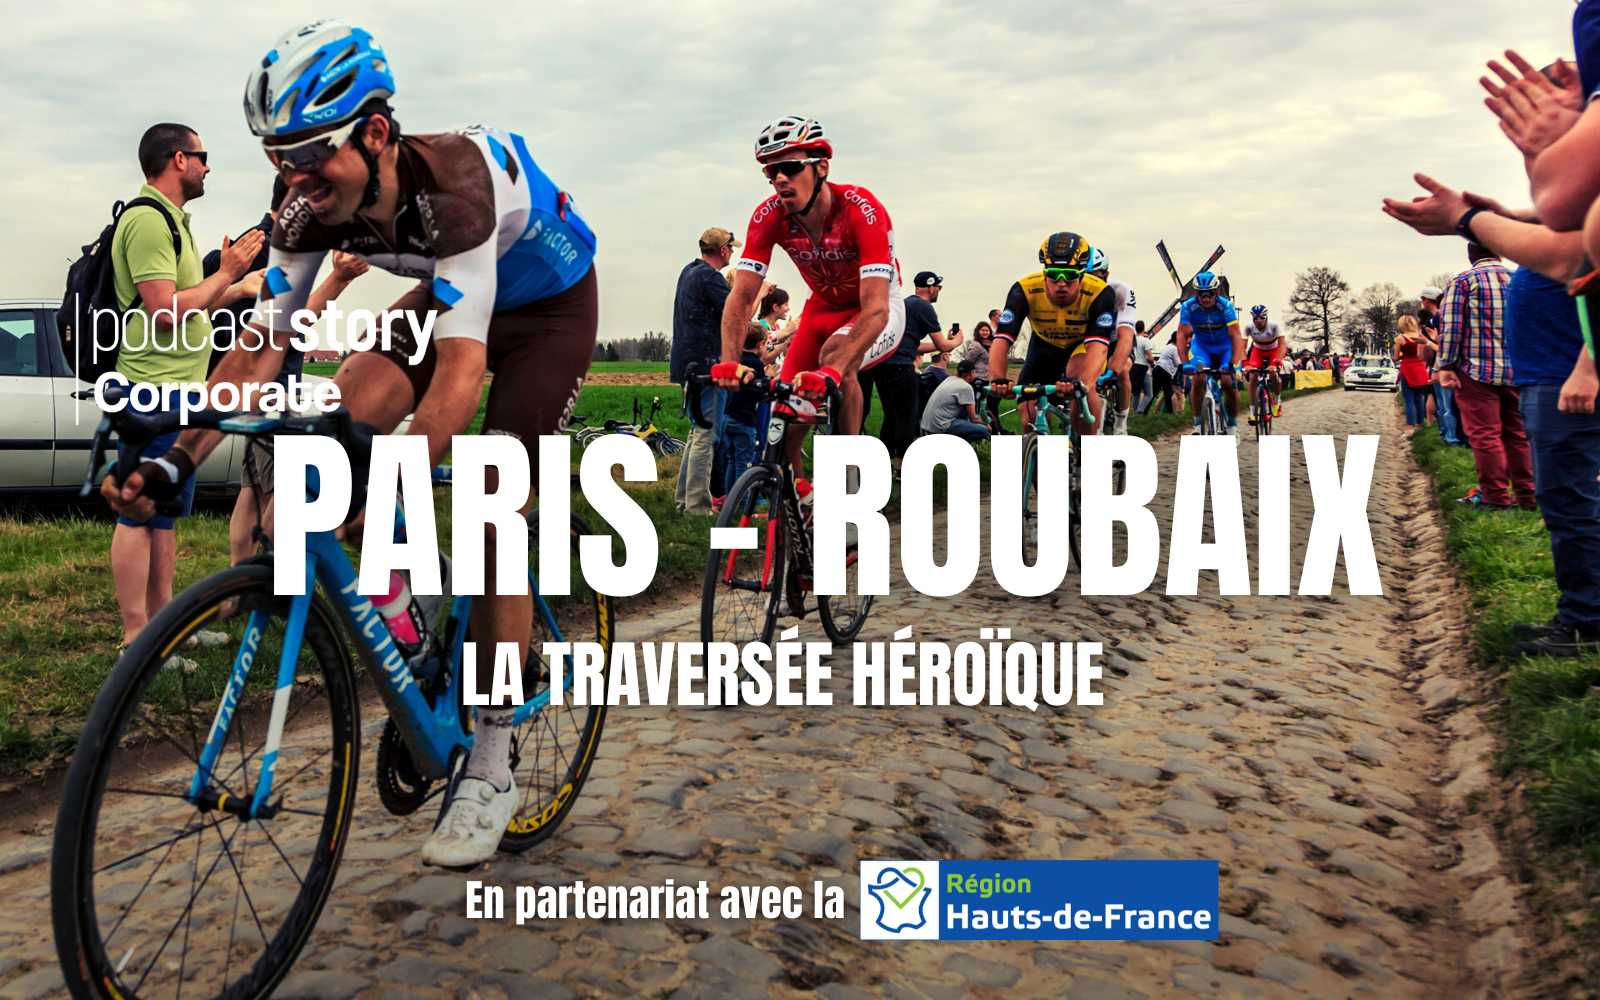 PARIS – ROUBAIX, la traversée héroïque !